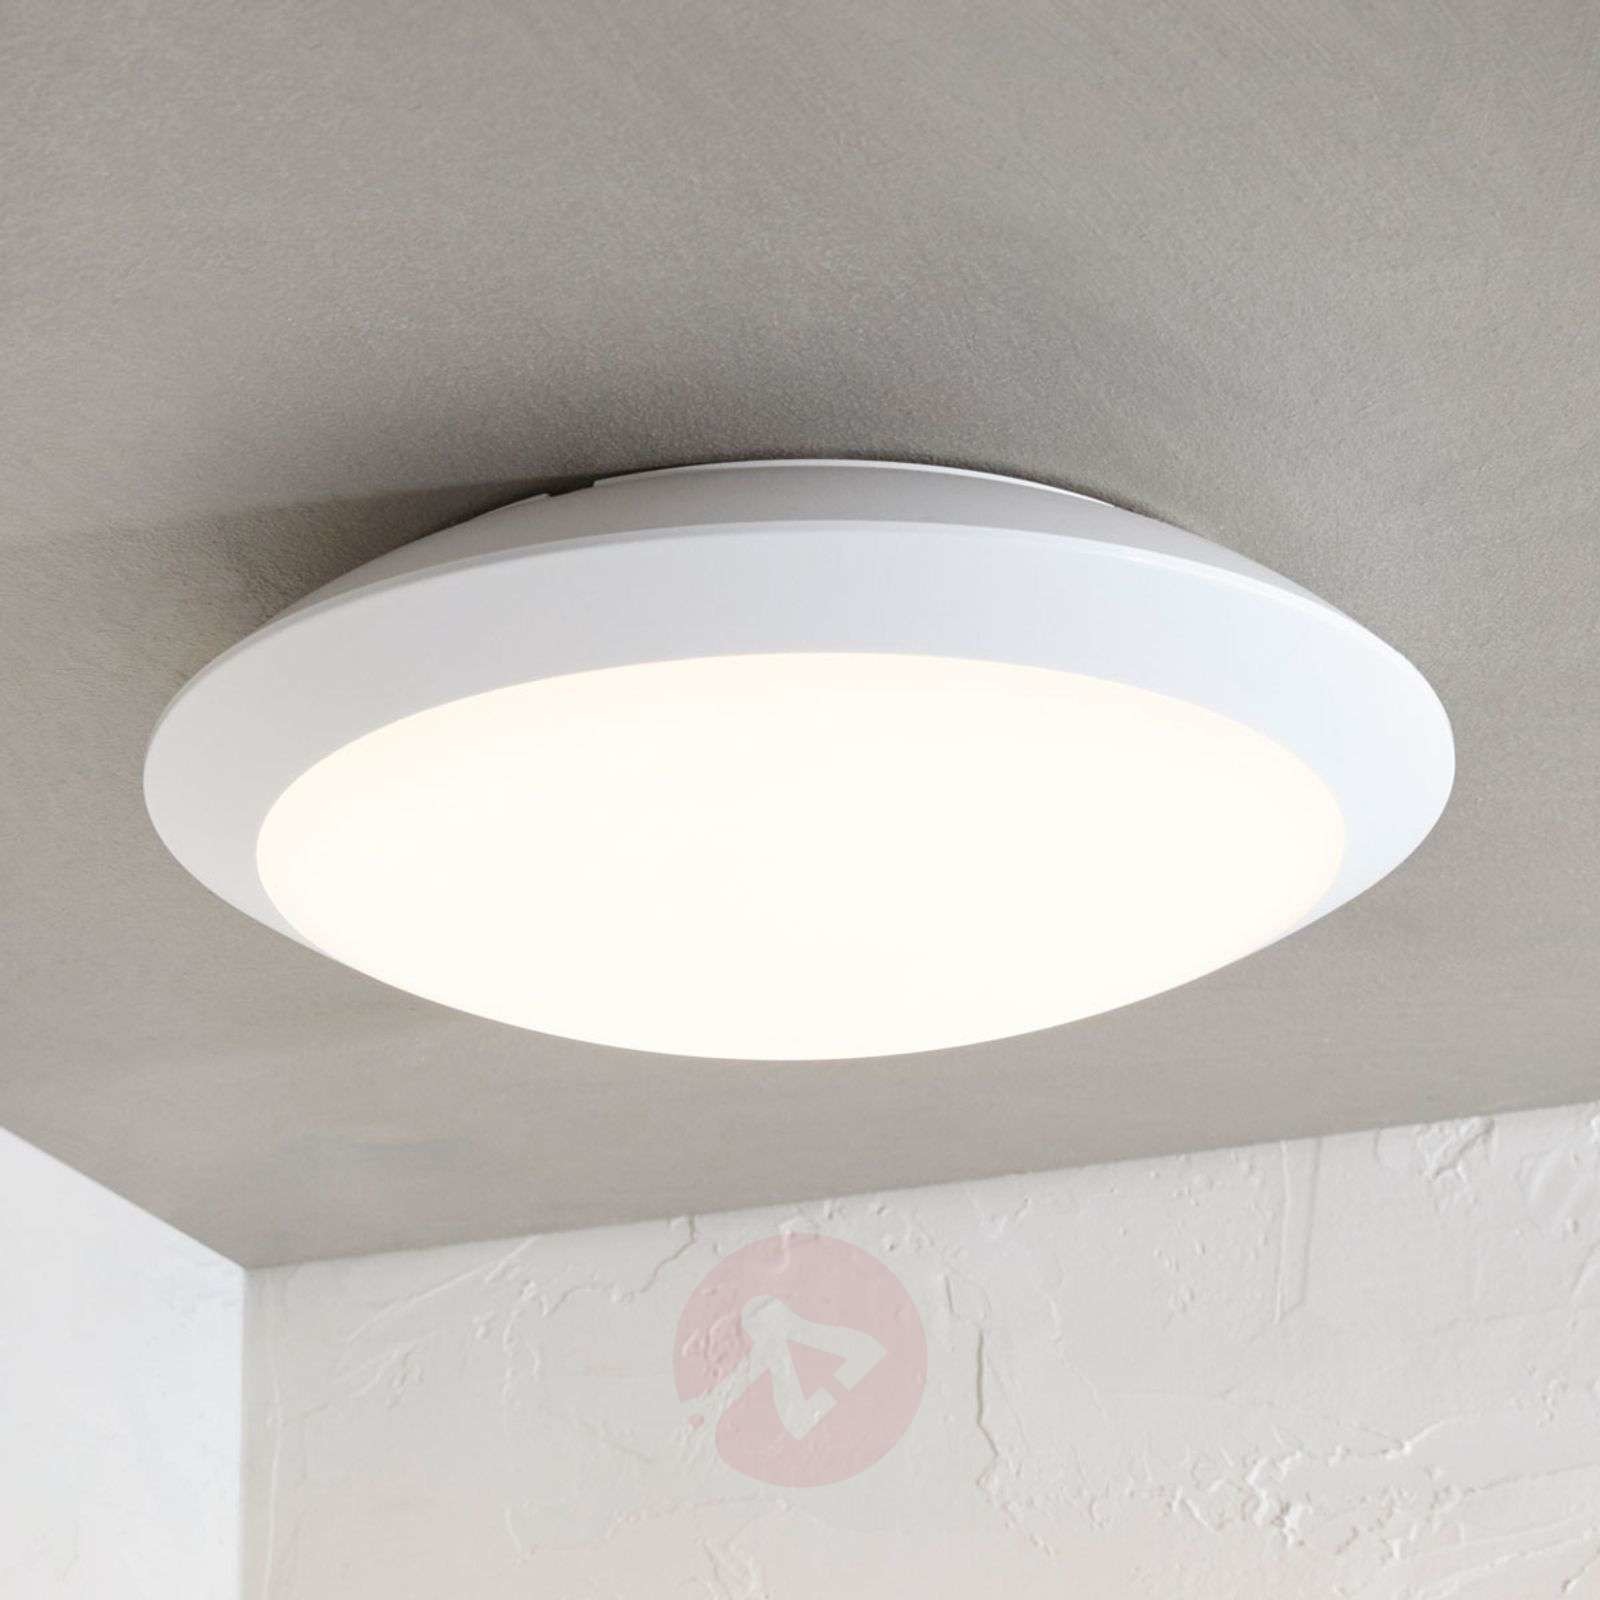 Lampenwelt com Lampa sufitowa LED Naira biała, z czujnikiem